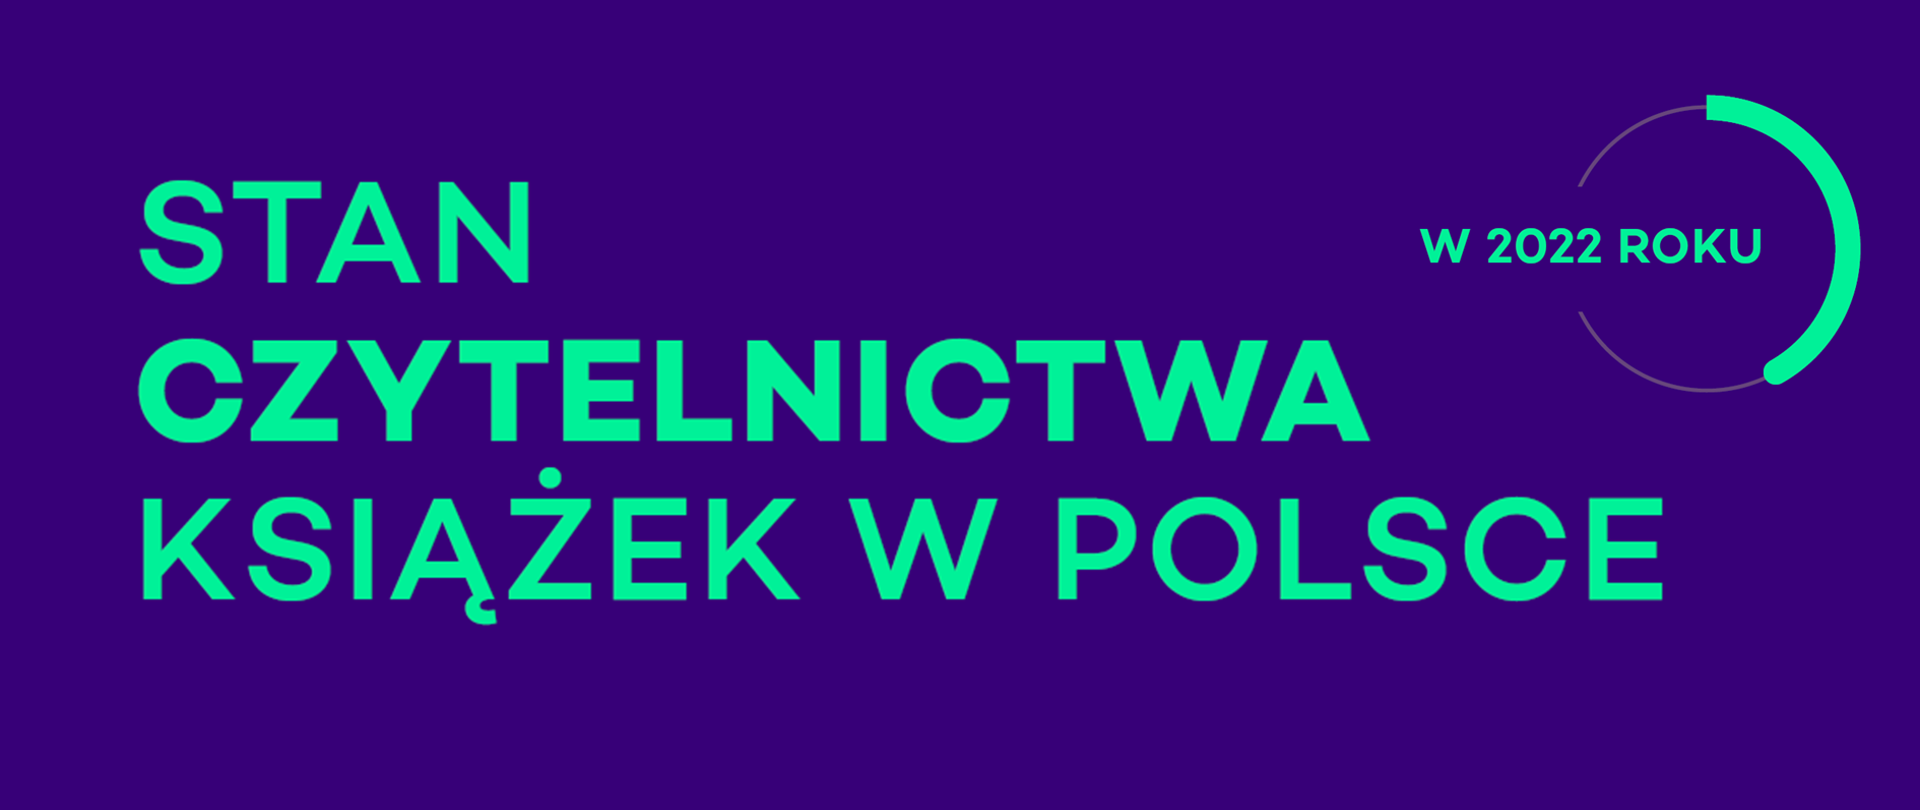 Stan czytelnictwa książek w Polsce w 2022 r.